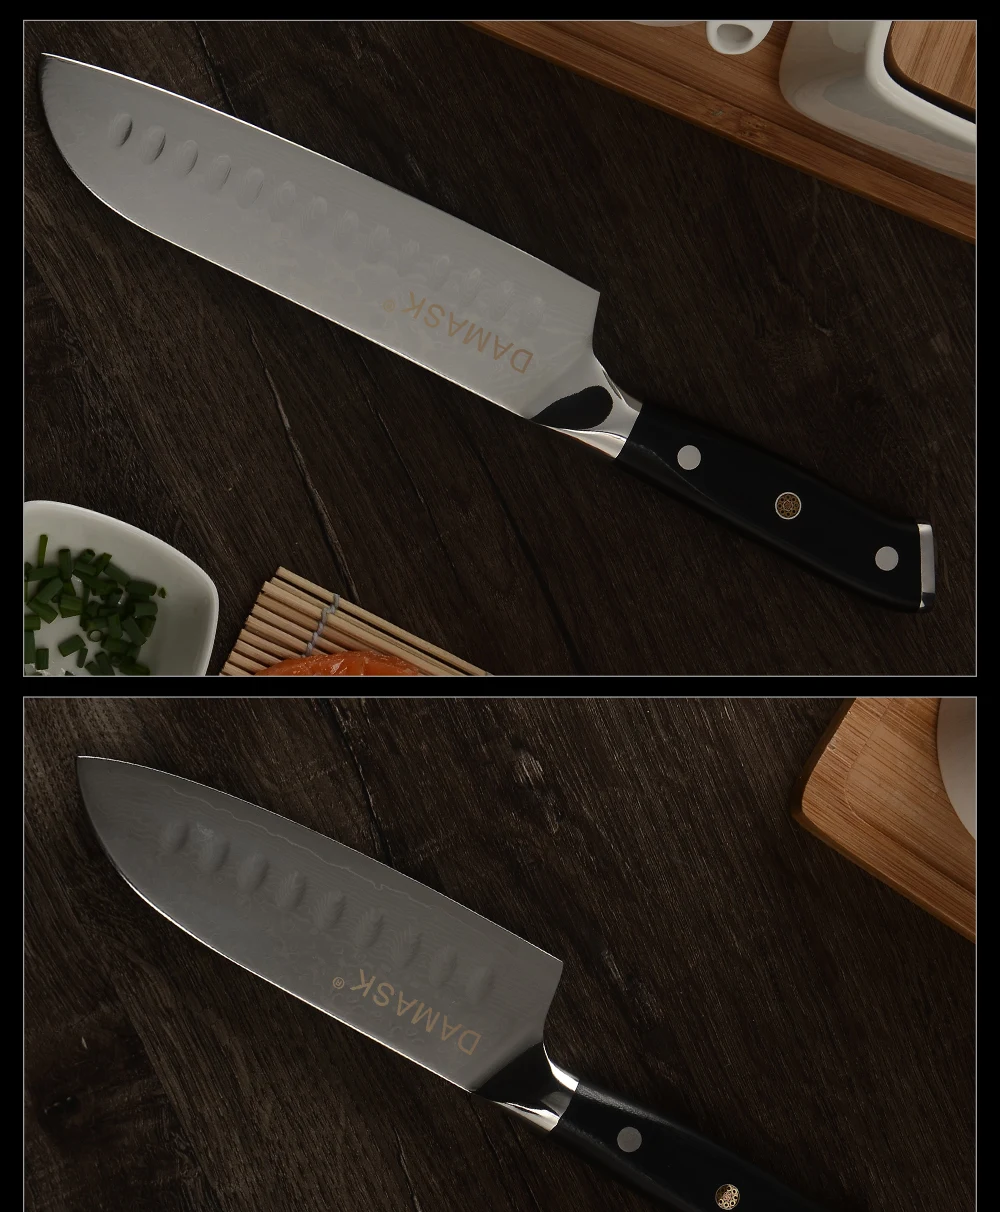 Дамасский набор ножей из дамасской стали кухонные ножи японский нож шеф-повара VG10 Дамасская сталь 67 слоистые лезвия резак сантоку кухонные ножи